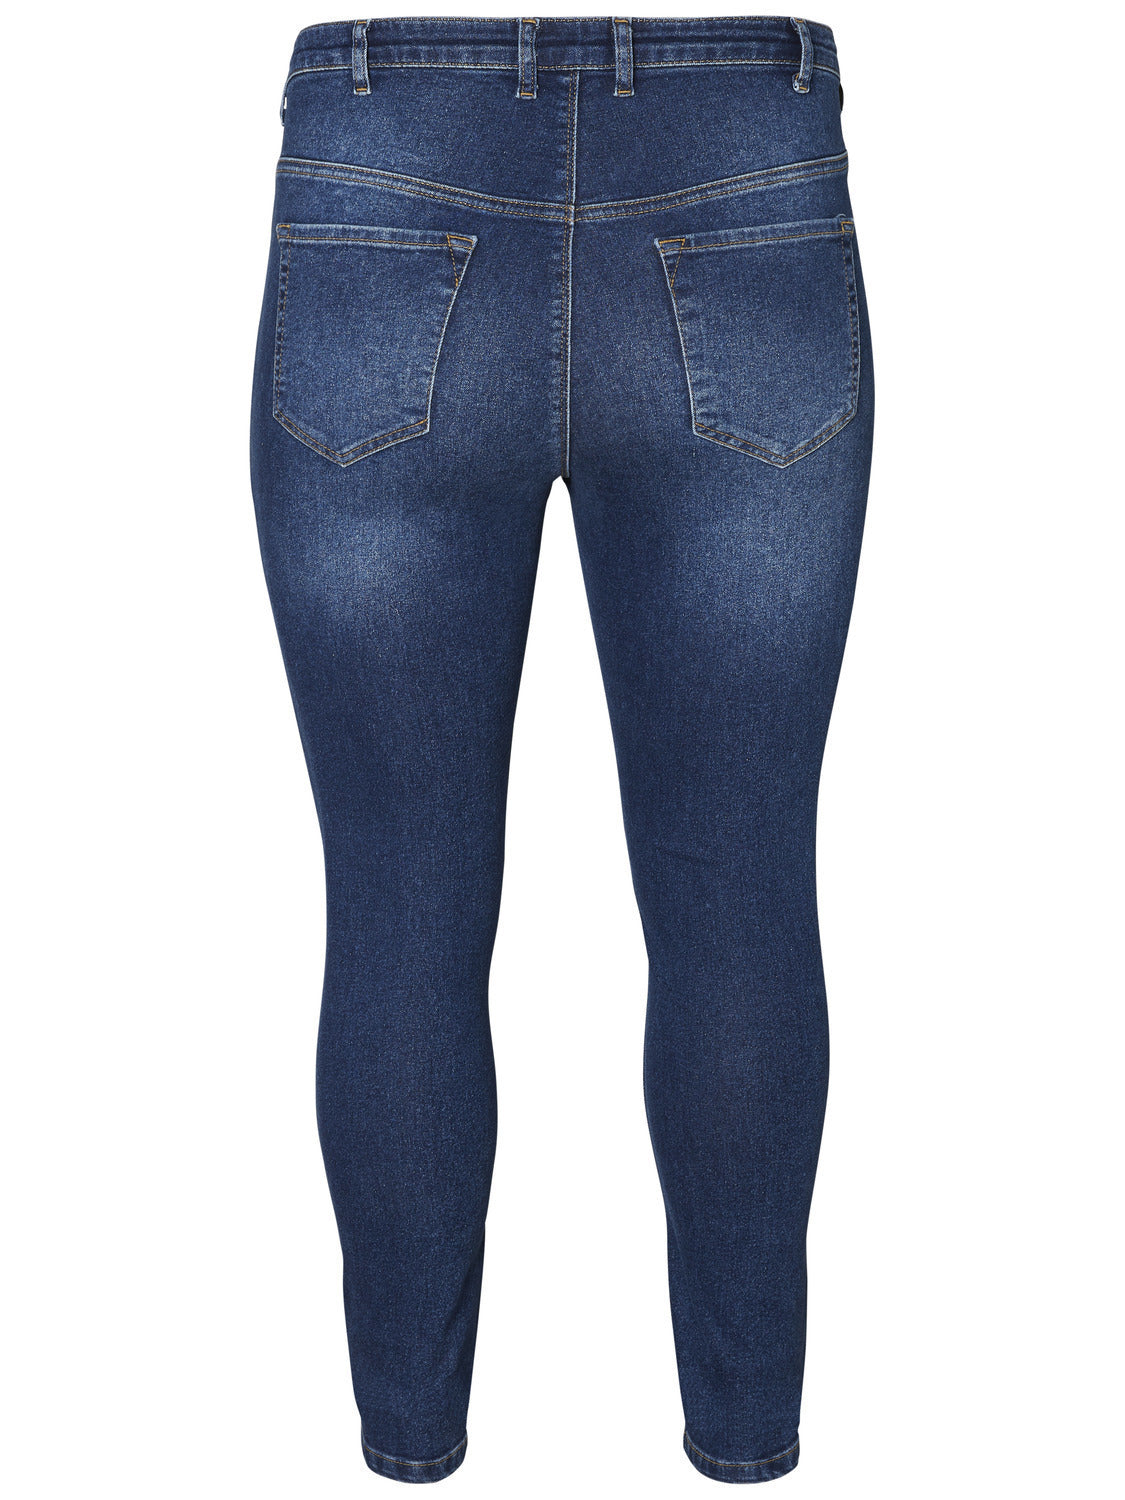 Stretchy jeans med høj talje smalle ben fra Junarose!-Pluspige